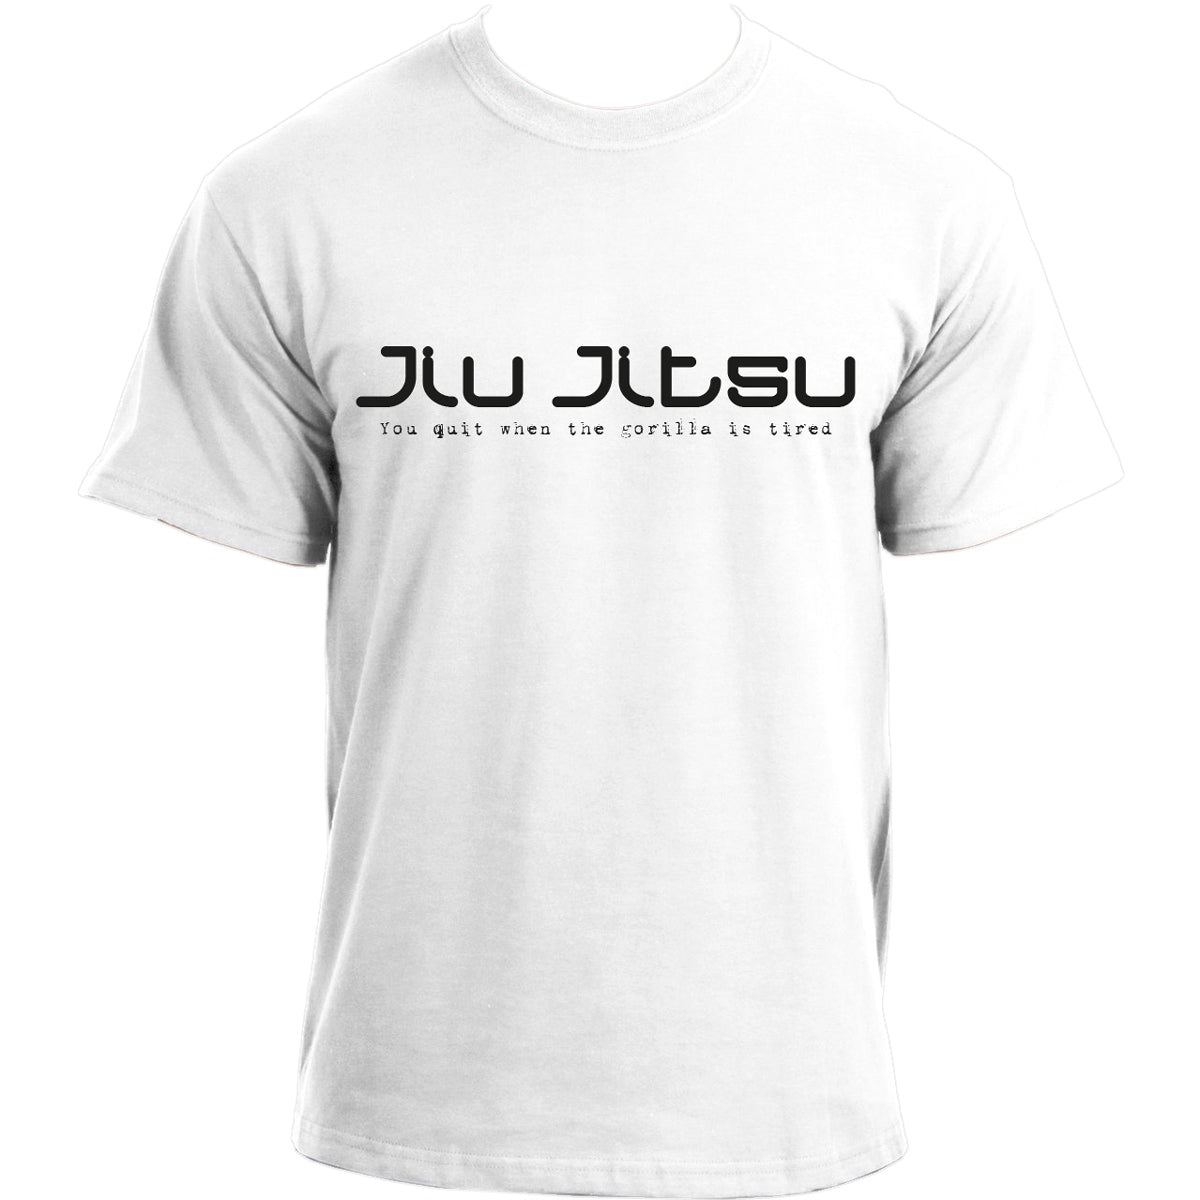 Brazilian Jiu Jitsu tshirt 'You quit when the gorilla is tired' MMA UFC BJJ T-shirt For Men